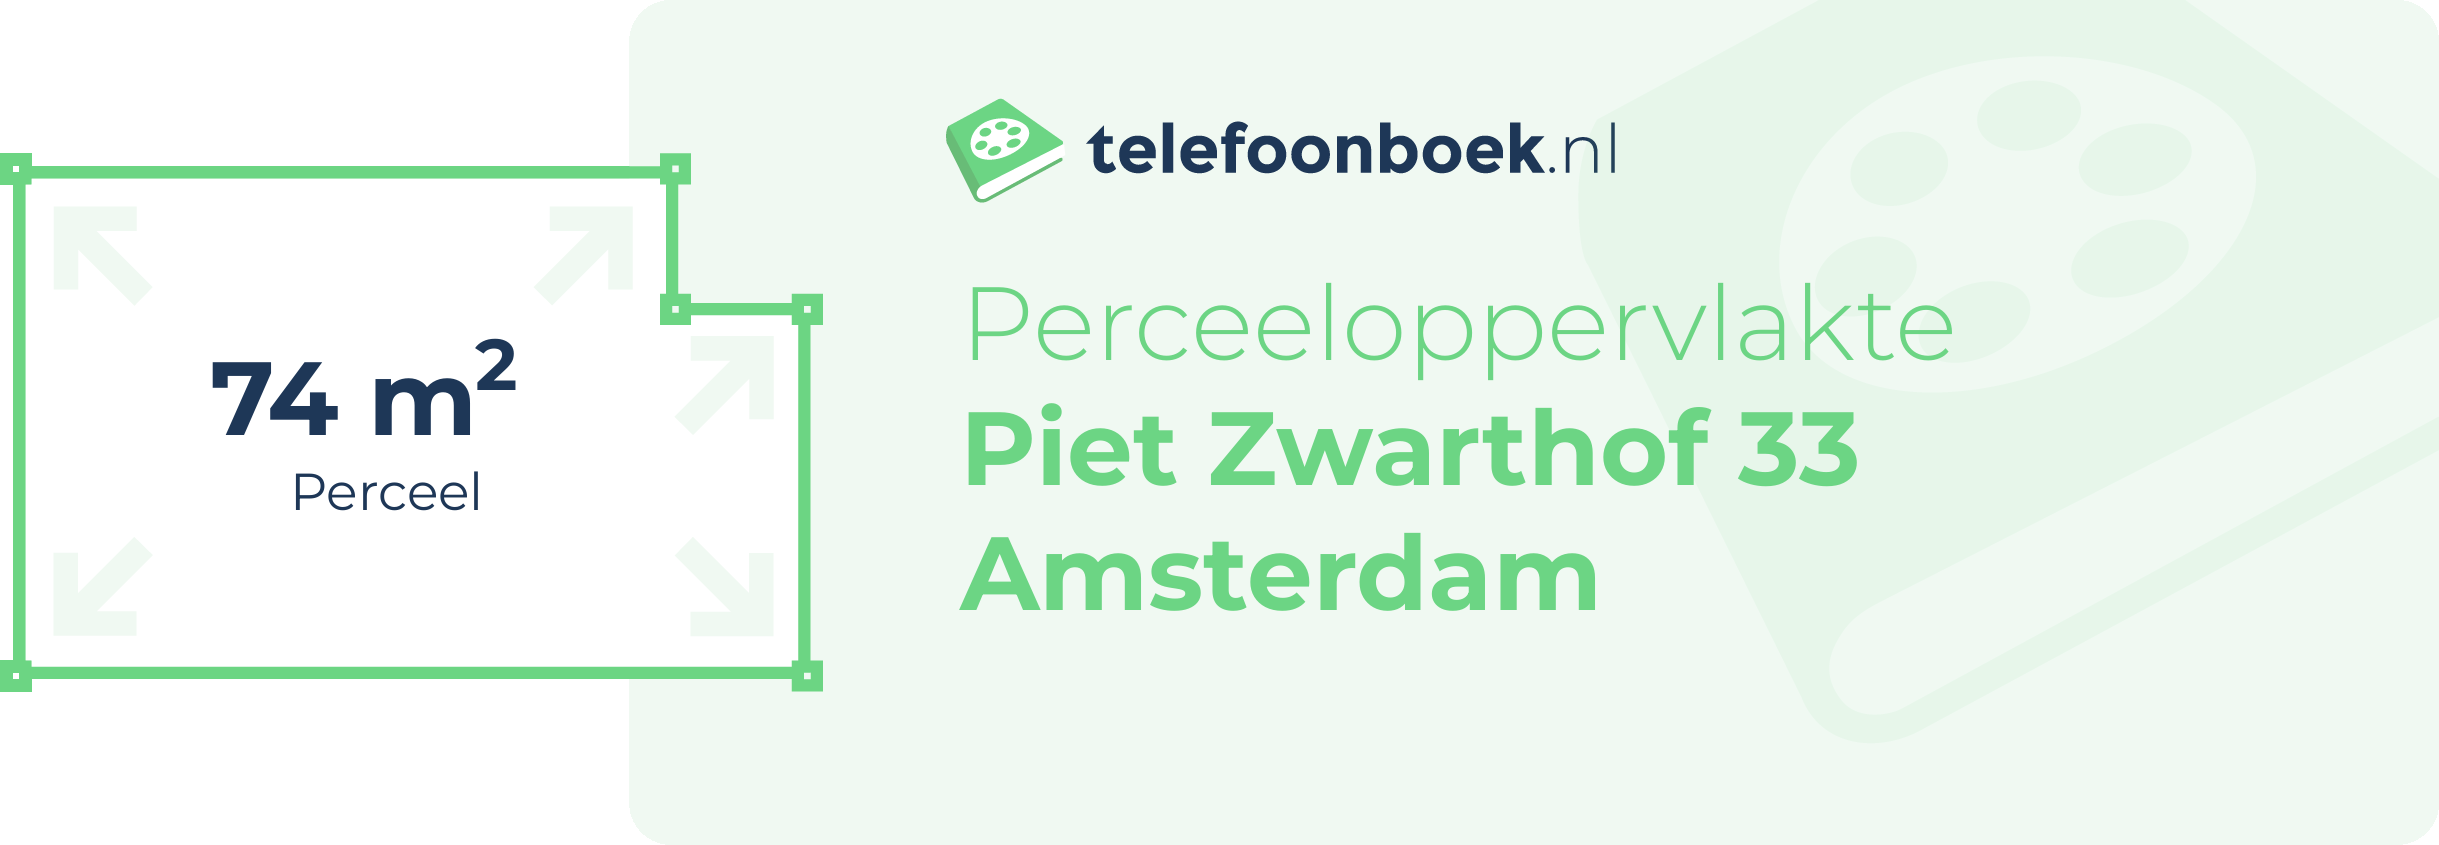 Perceeloppervlakte Piet Zwarthof 33 Amsterdam